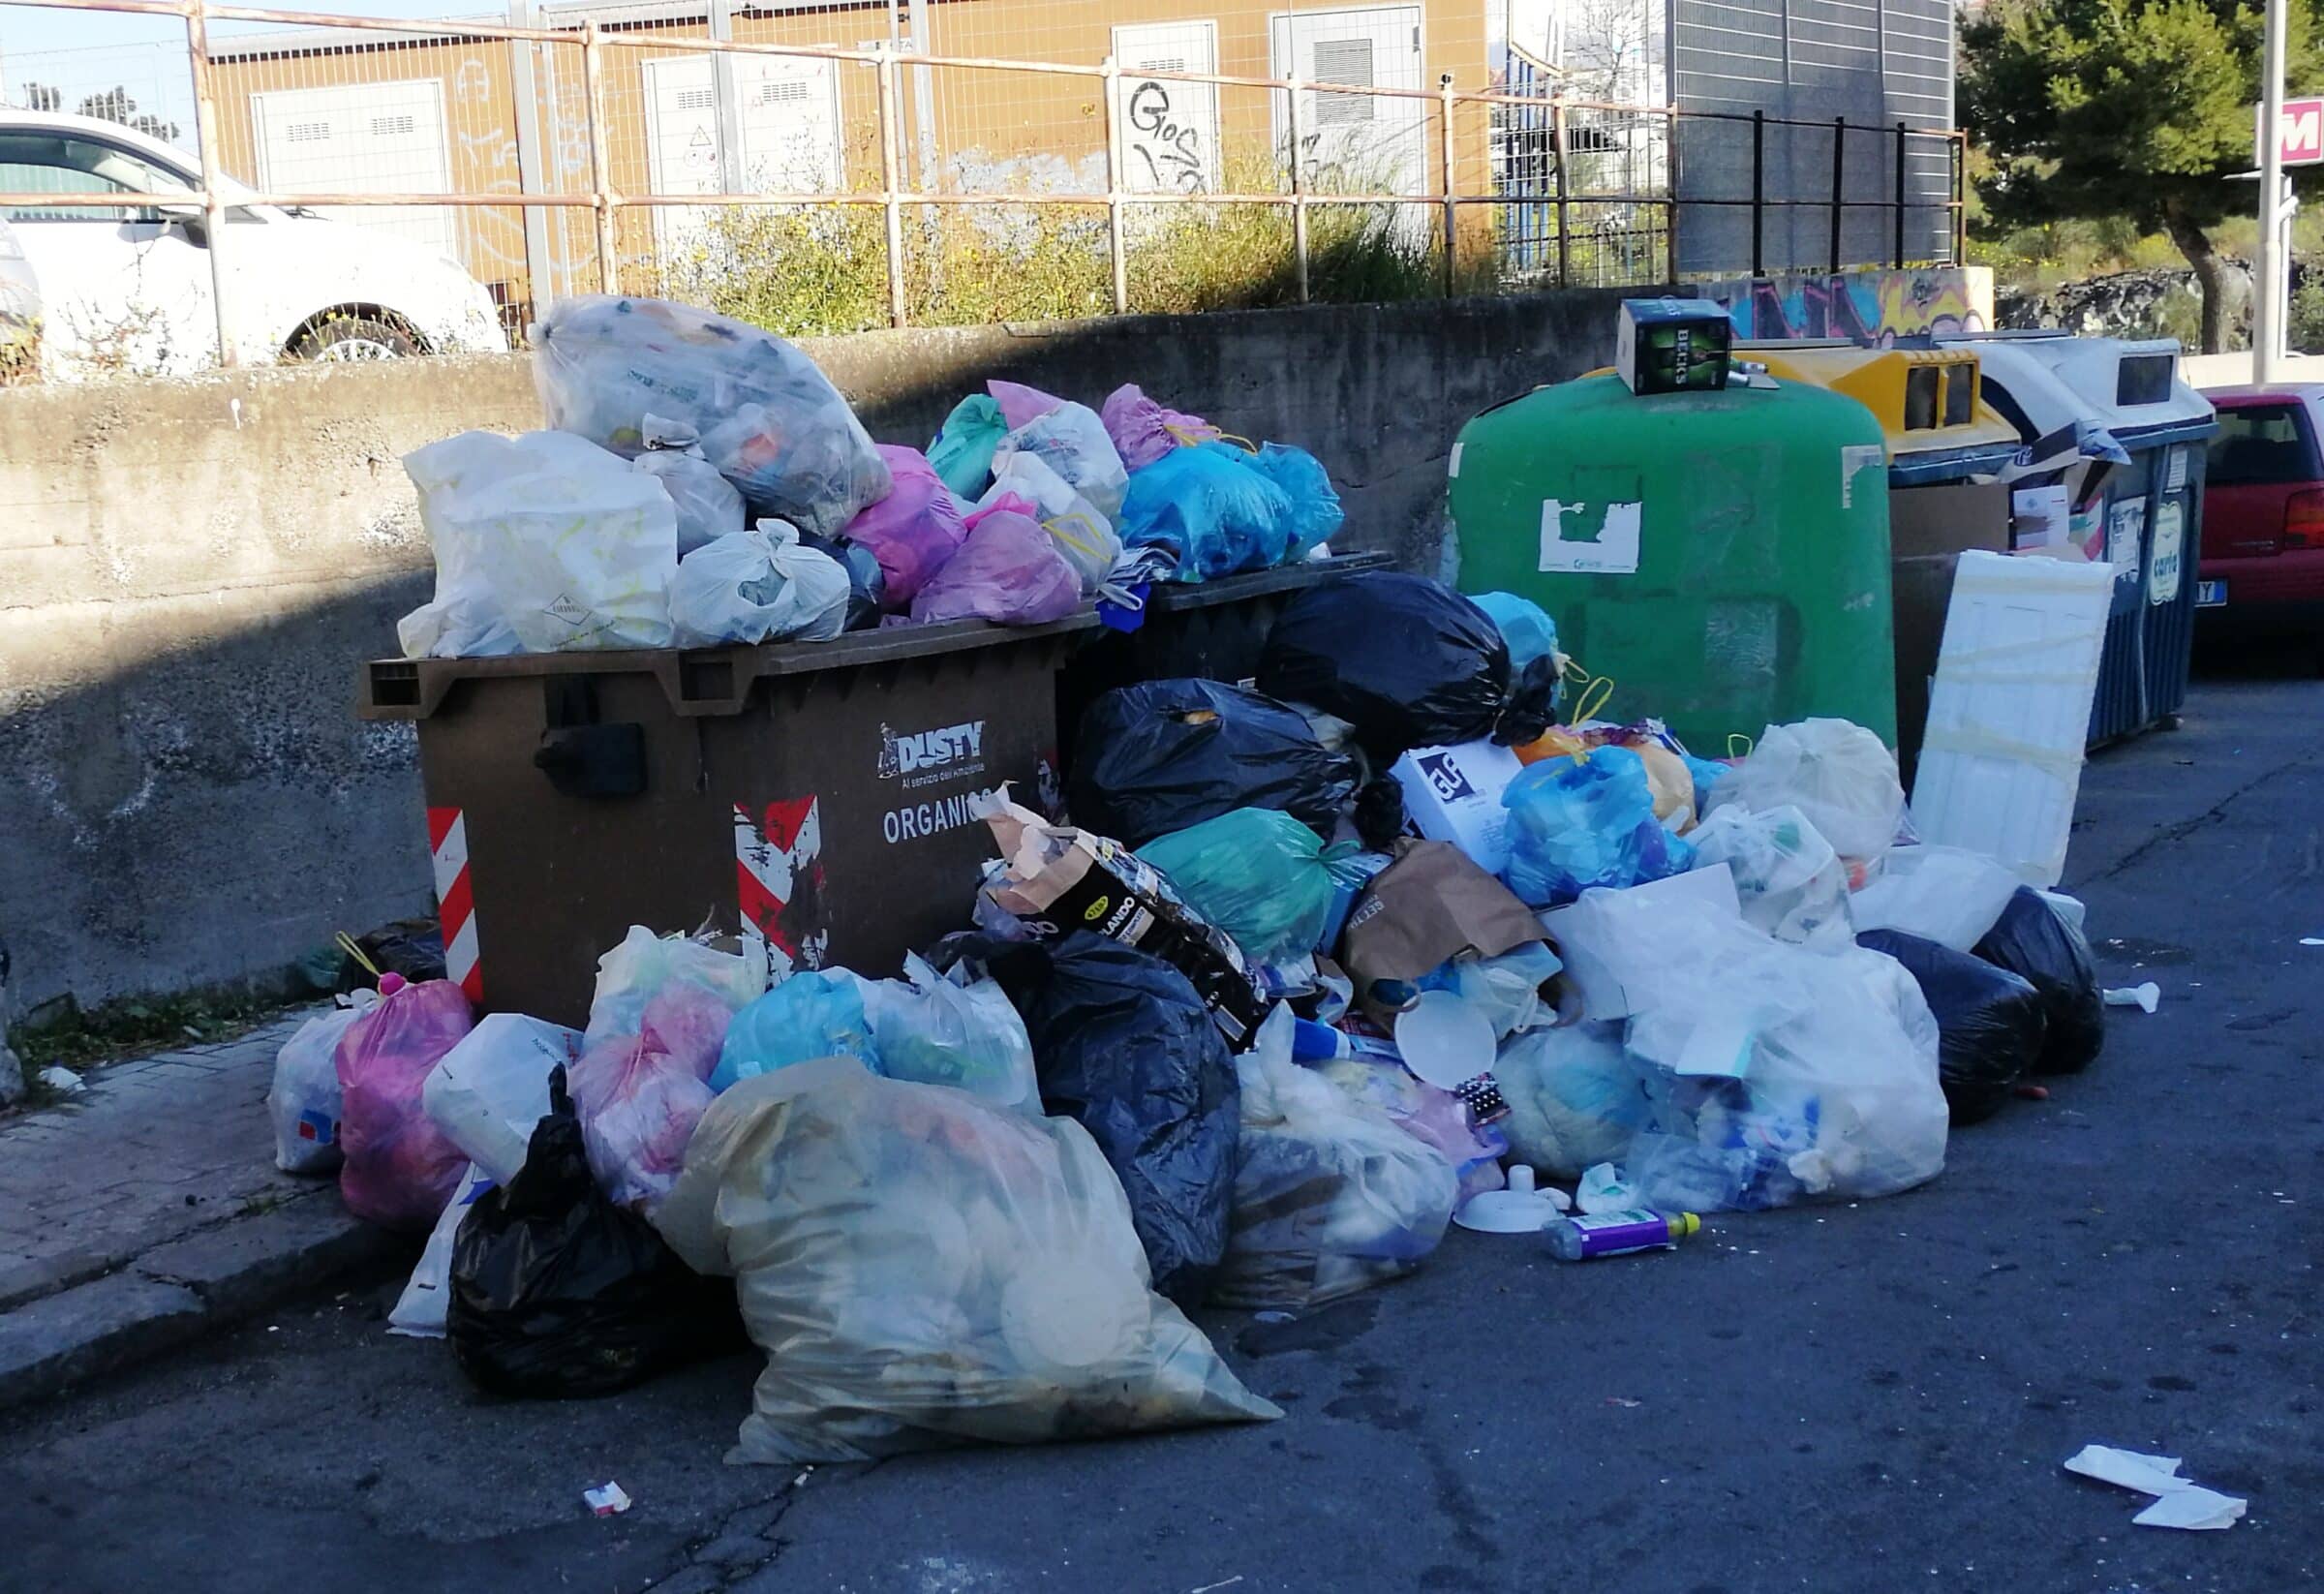 Catania “sommersa” dalla spazzatura, il Comitato Romolo Murri: “Servono soluzioni immediate e radicali”